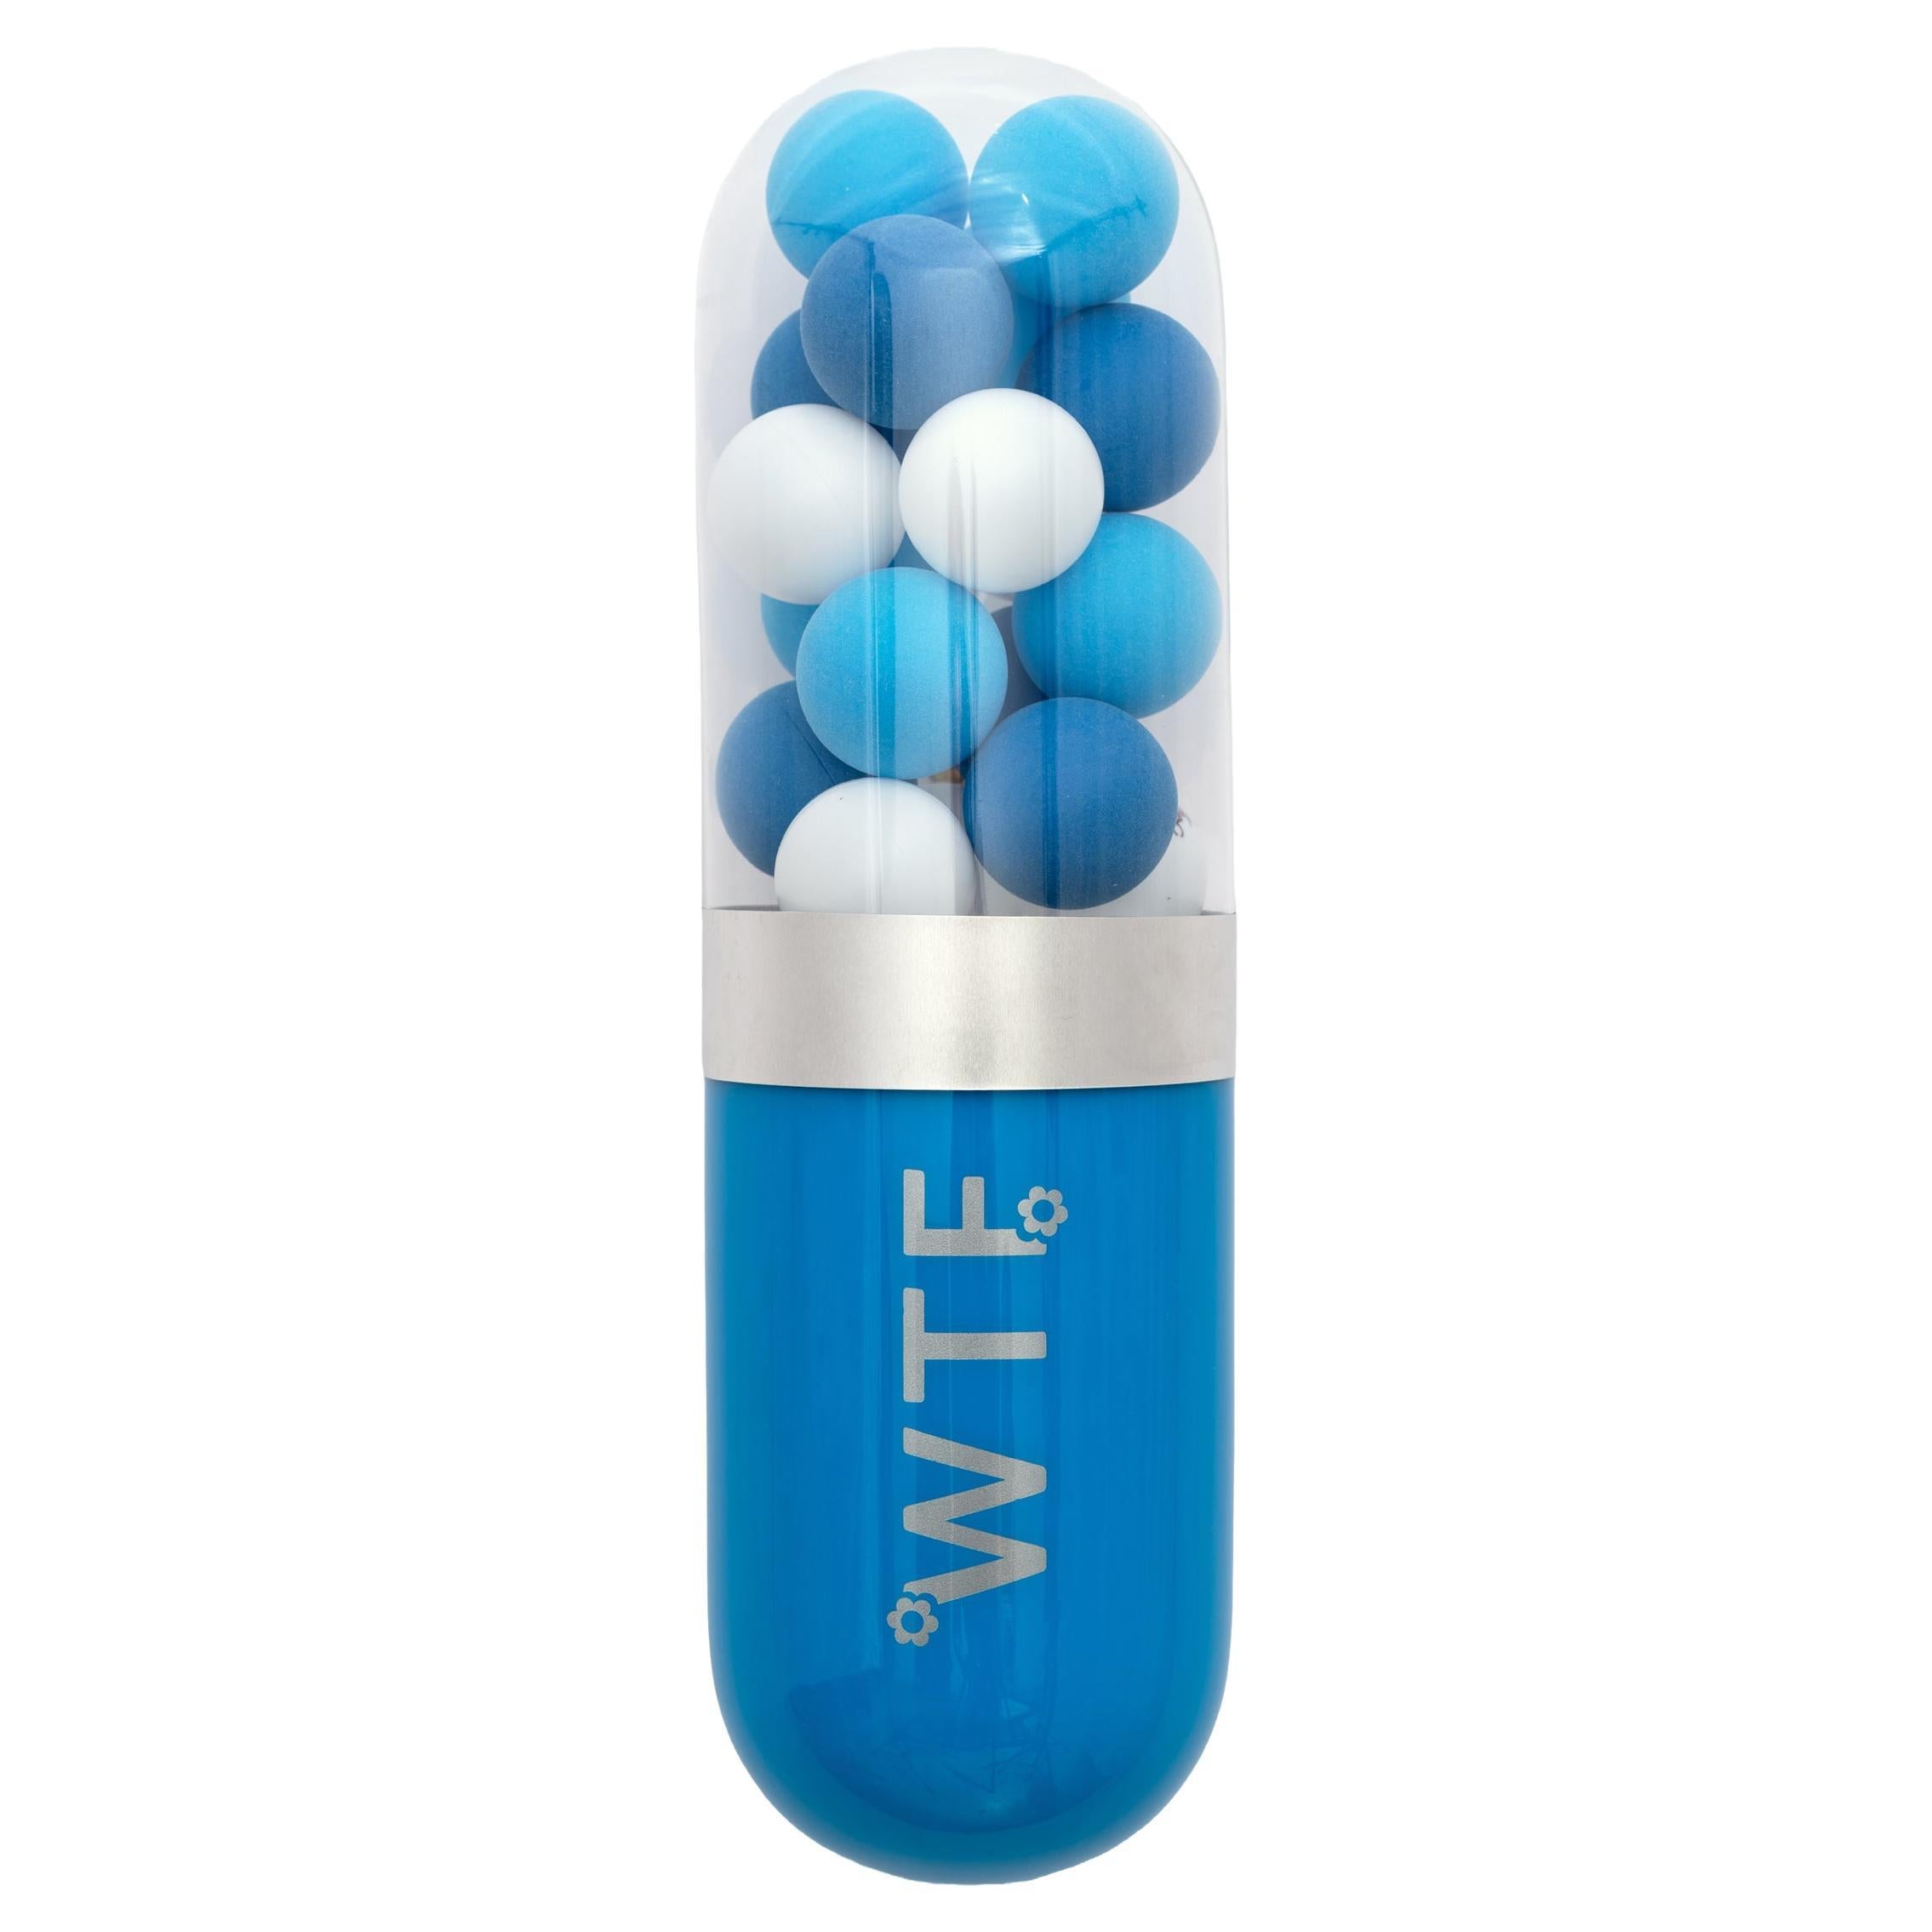 Sculpture de pilules en verre bleu WTF (What the Fuck) en vente